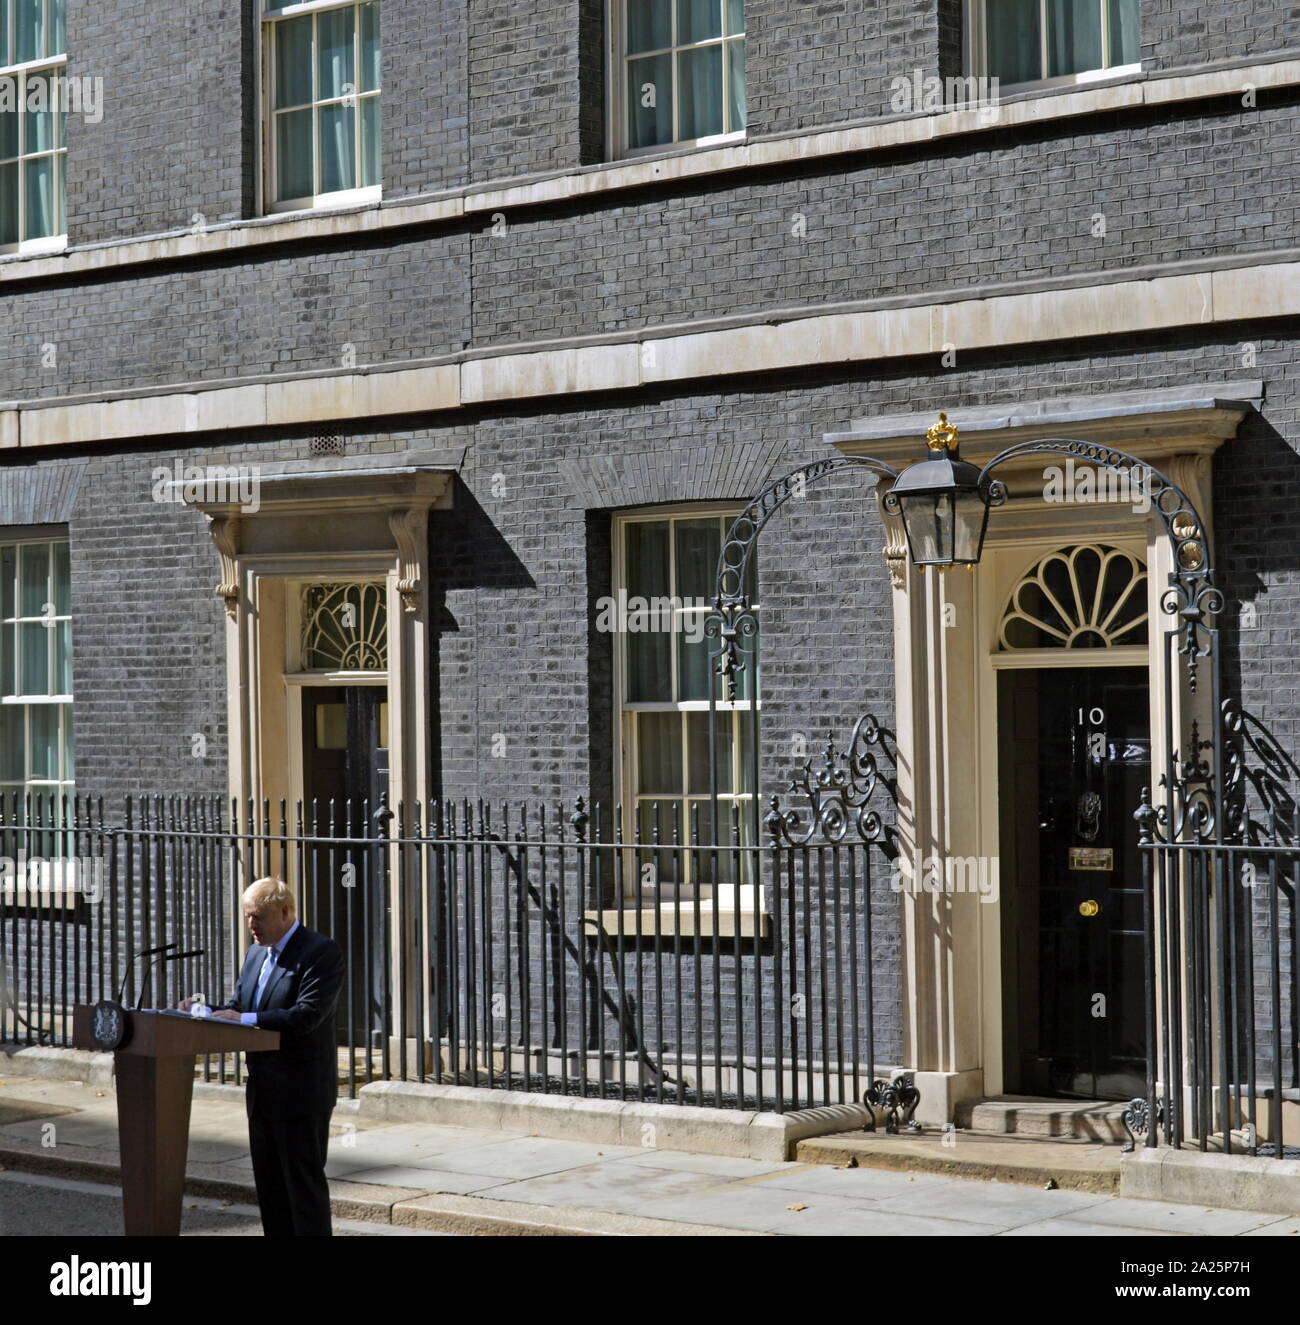 Boris Johnson, (né le 19 juin 1964), politicien britannique et premier ministre du Royaume-Uni et chef du parti conservateur depuis juillet 2019. Boris Johnson arrivant à Downing Street pour son premier jour en tant que premier ministre le 24 juillet 2019 Banque D'Images